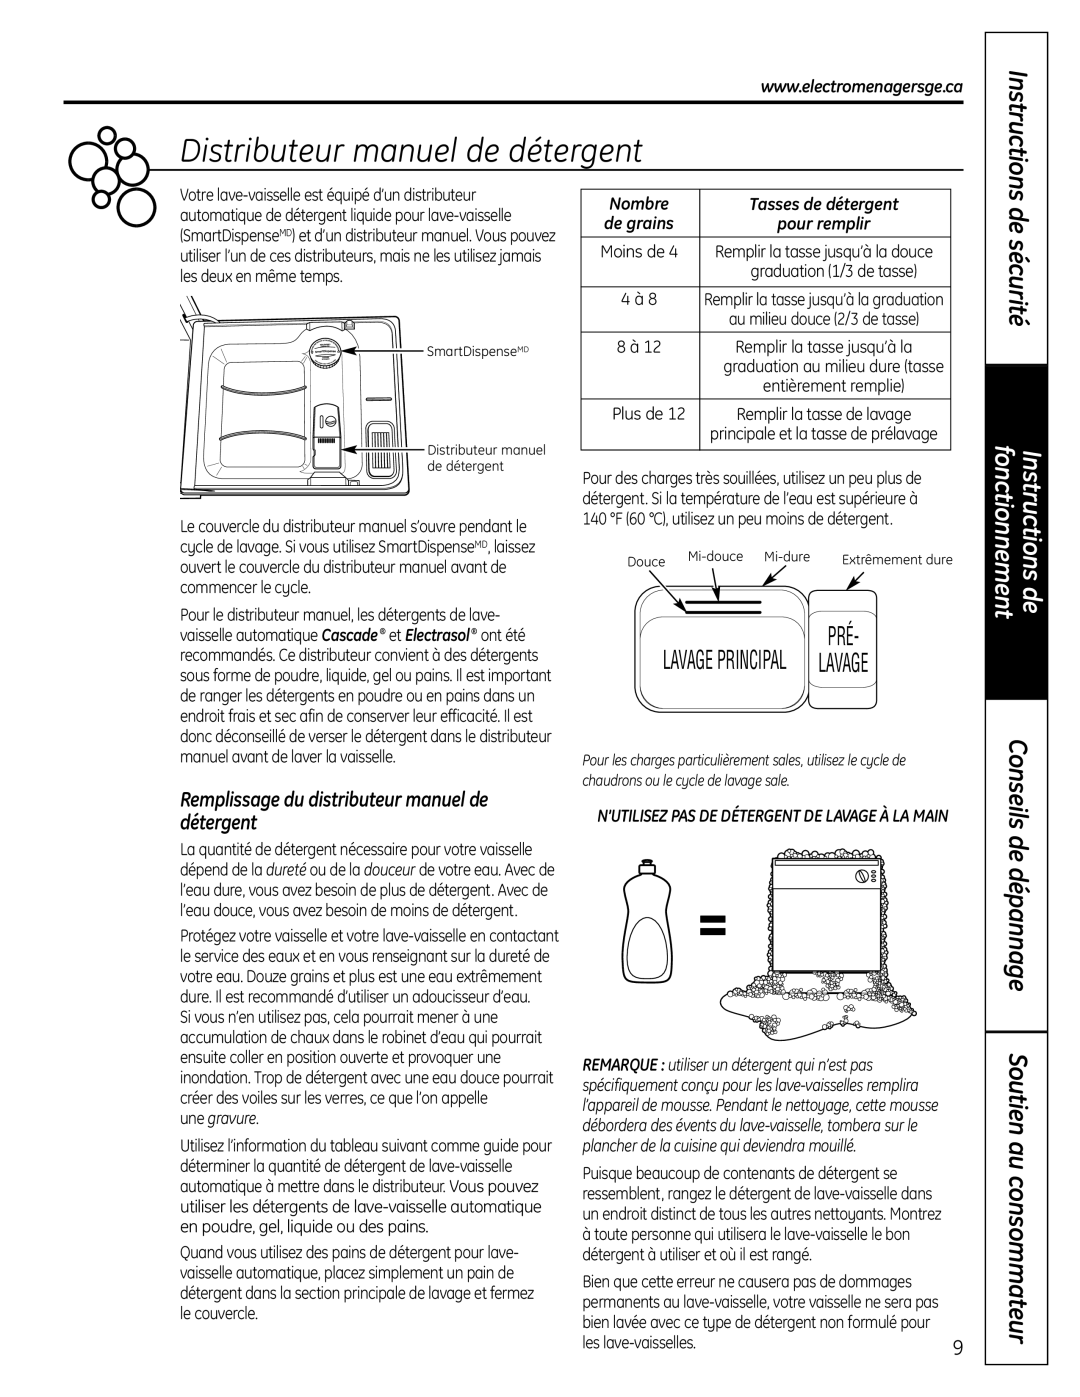 GE PDW9000 manual Distributeur manuel de détergent, de sécurité, de dépannage Soutien au consommateur, Instructions, Nombre 